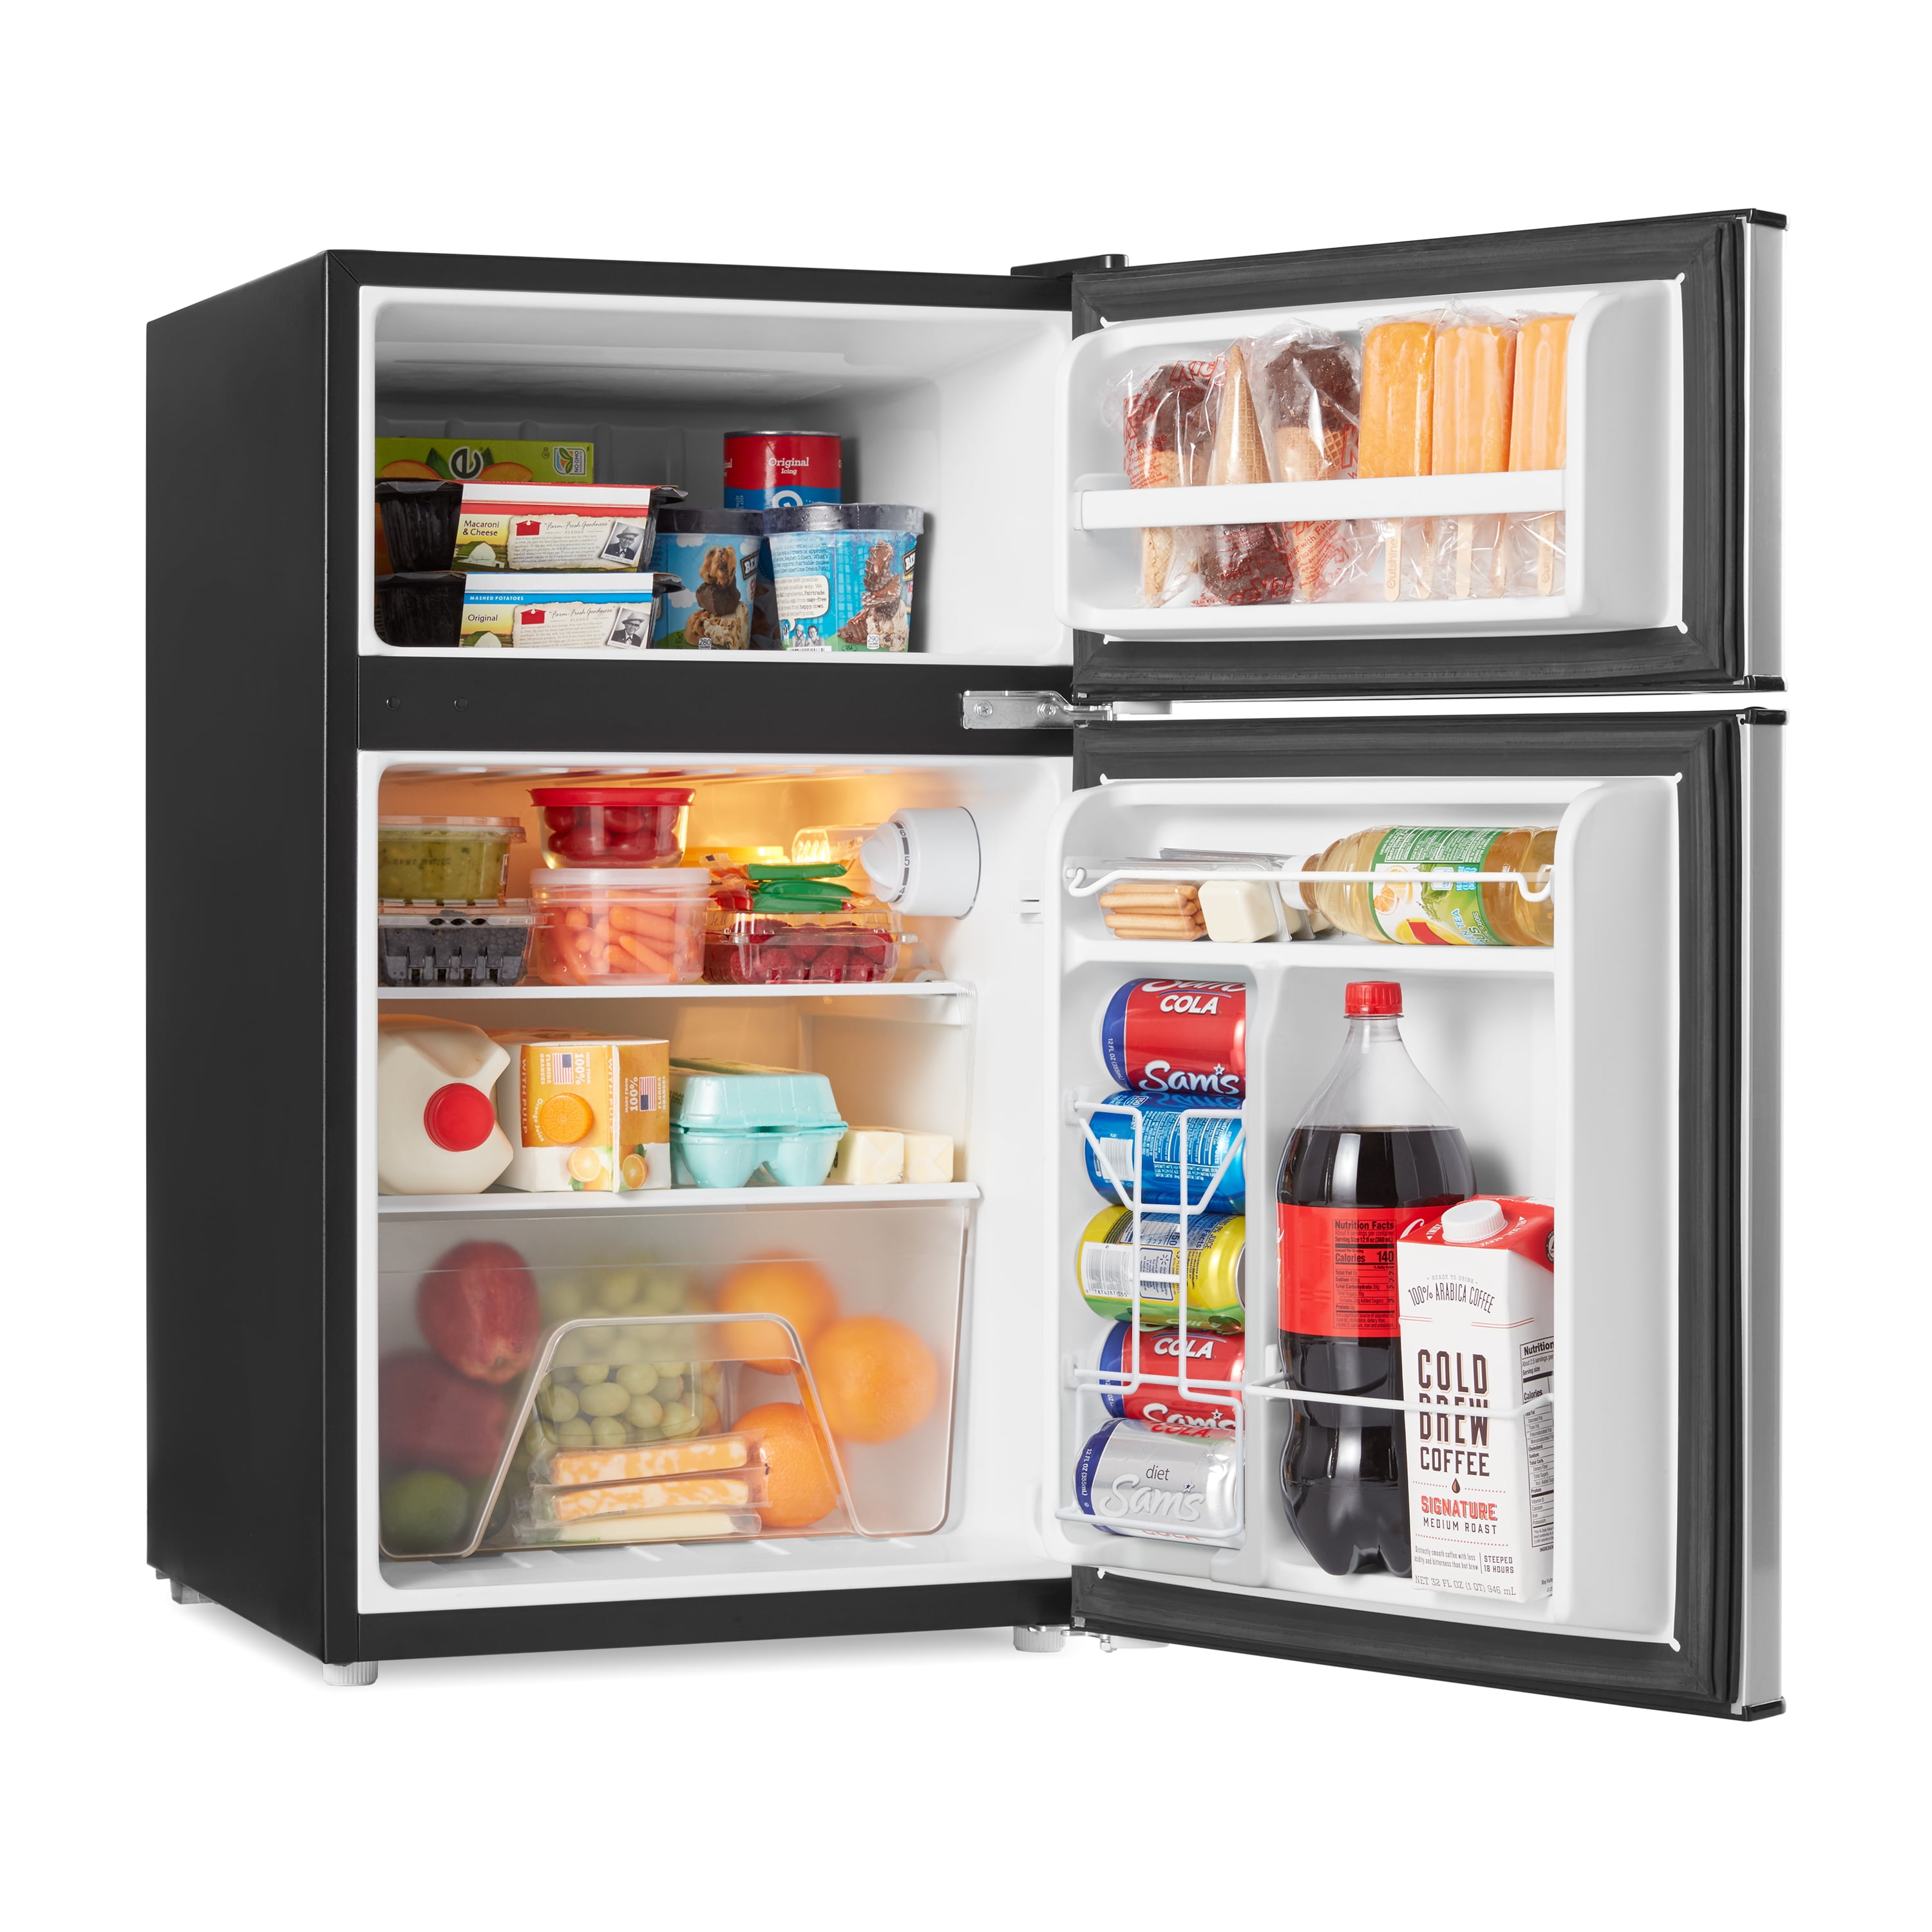 Mini-réfrigérateur Galanz à deux portes avec congélateur, noir, de